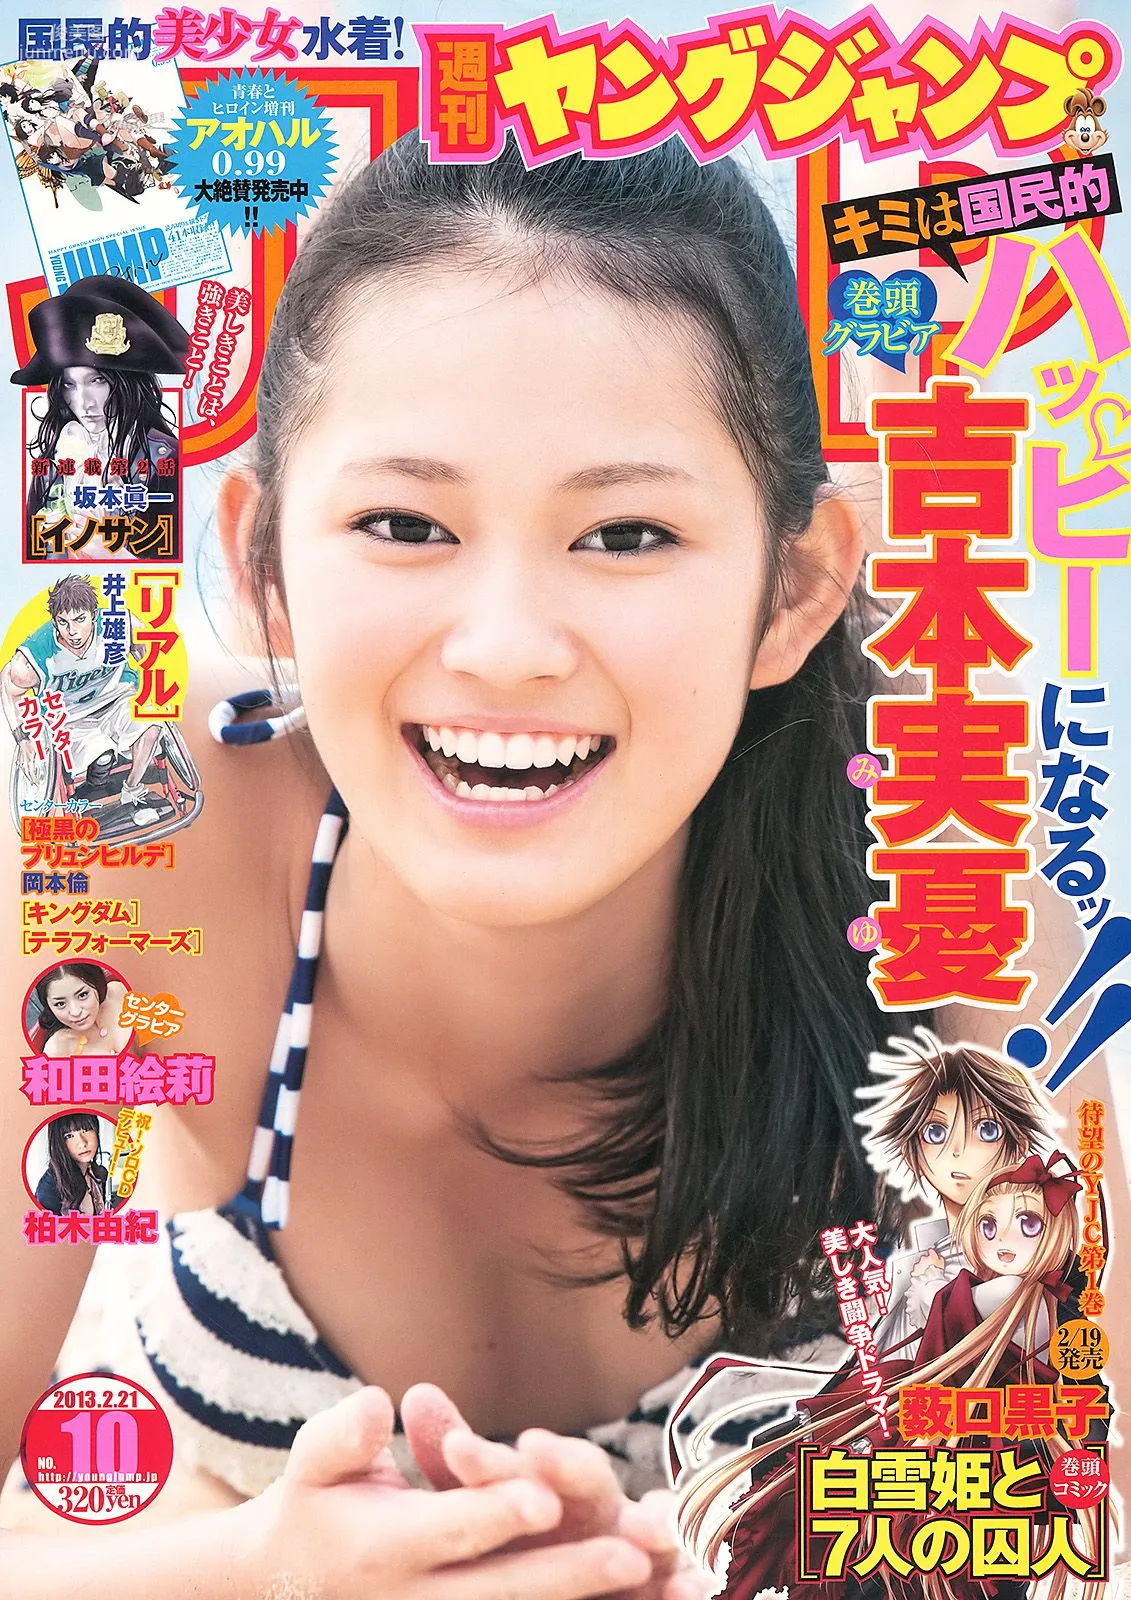 吉本実憂 和田絵莉 [Weekly Young Jump] 2013年No.10 写真杂志1